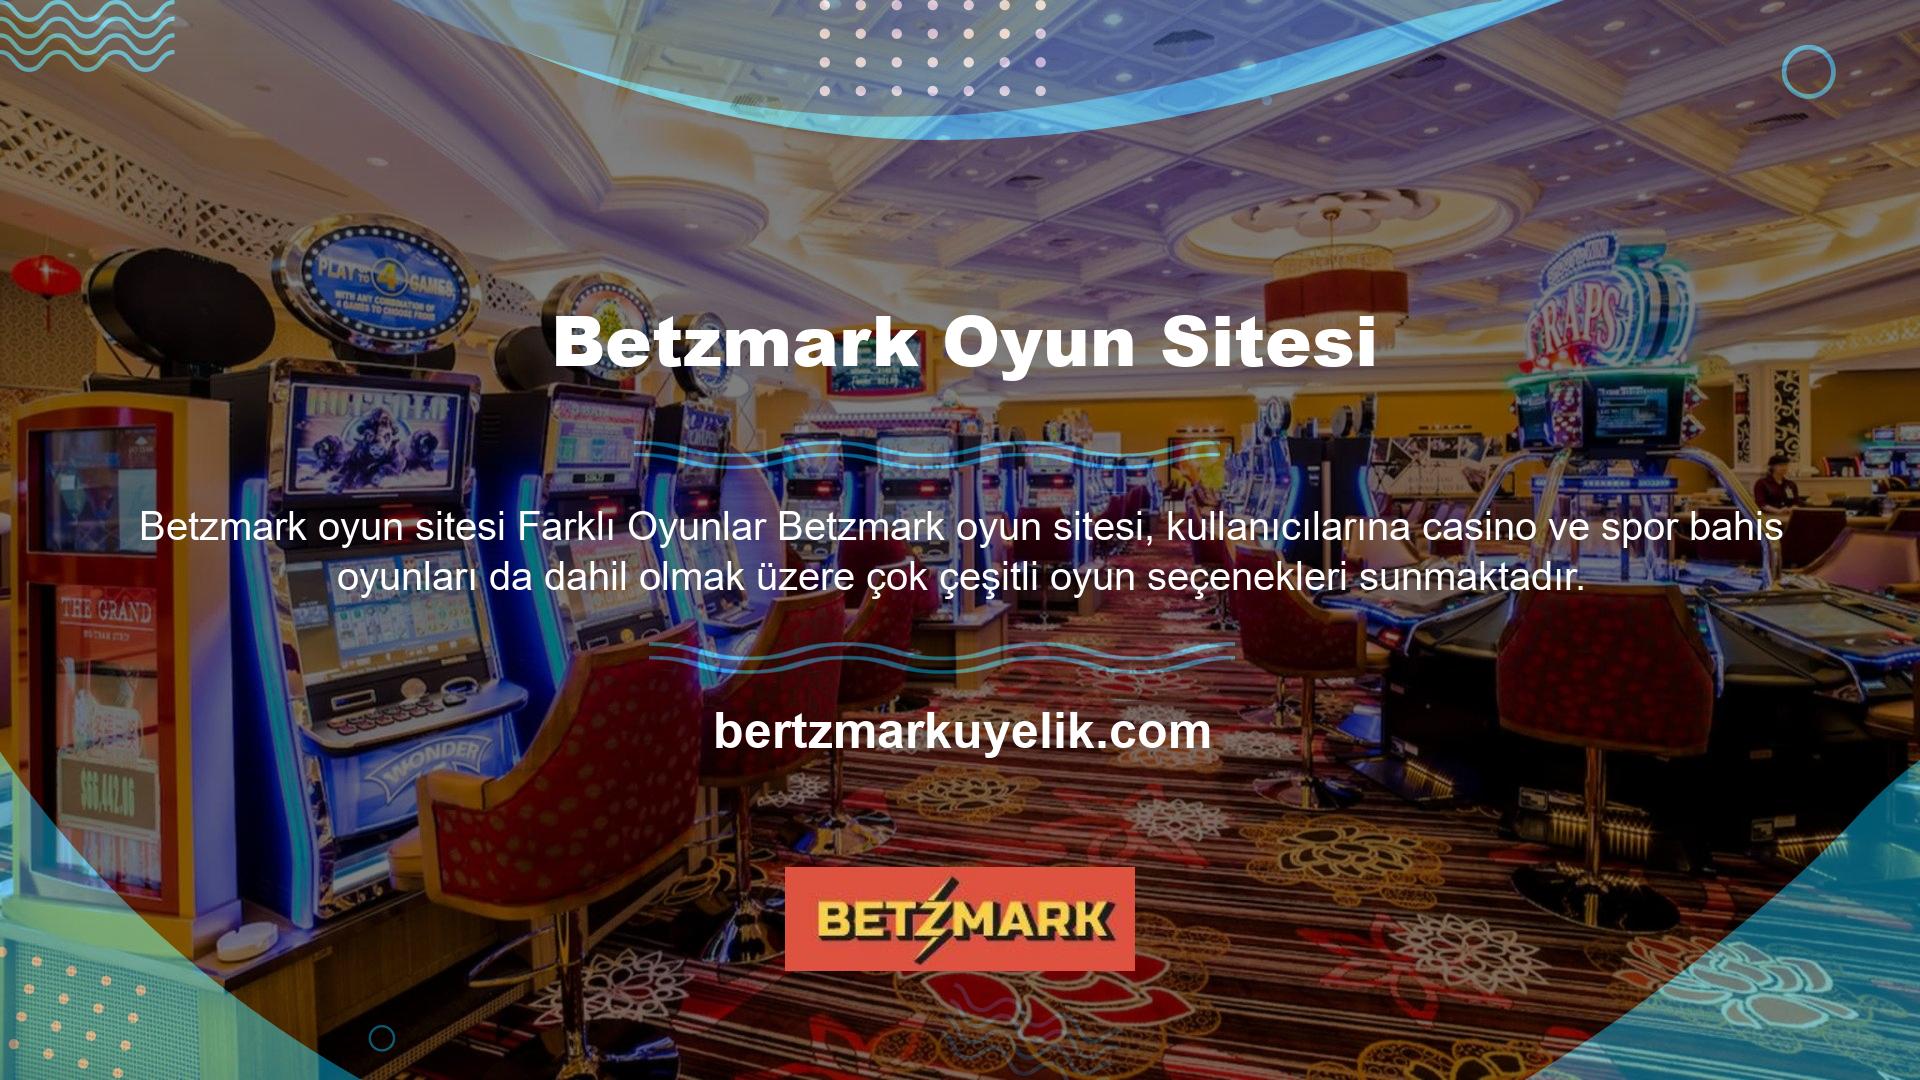 Betzmark ana sayfasında yer alan her oyun başlığı farklı oyun türlerini barındırmaktadır